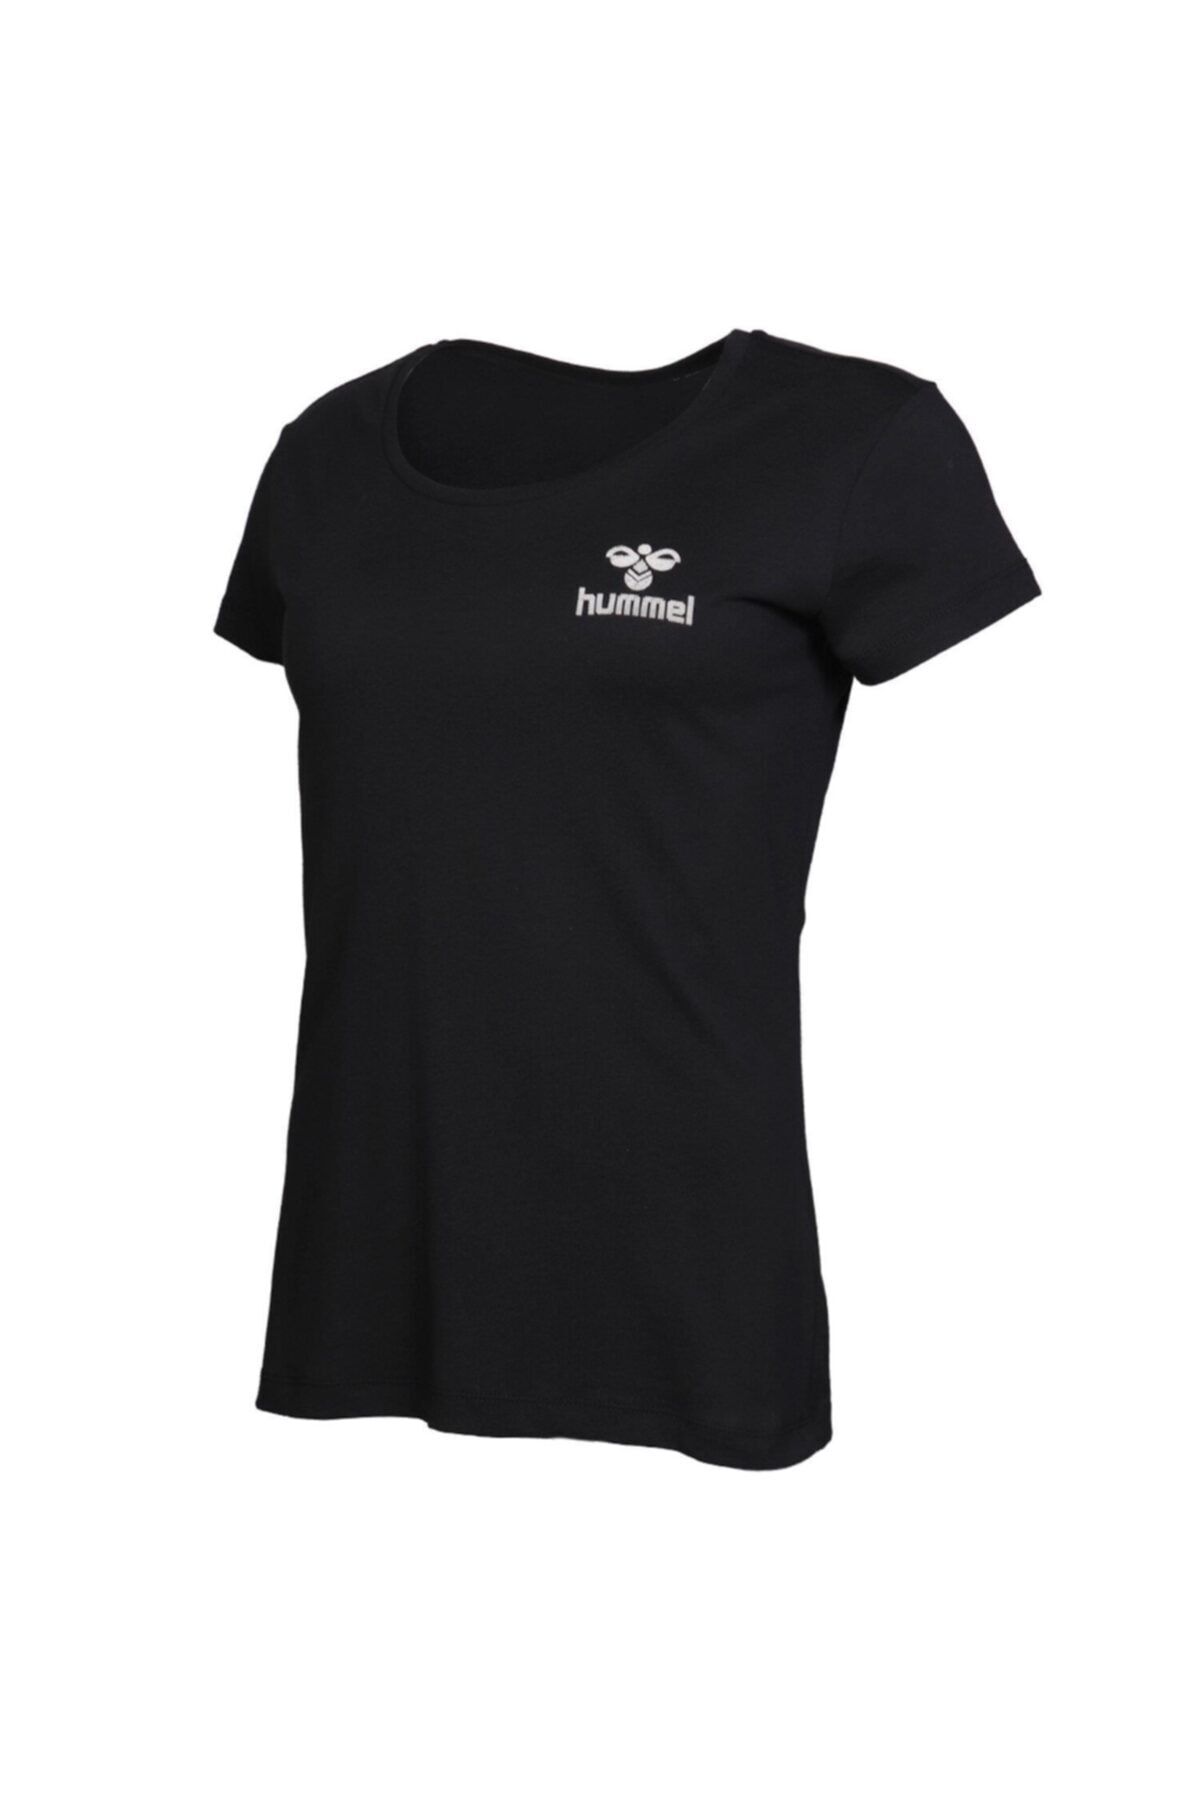 hummel Kadın Siyah Sabana T-shirt